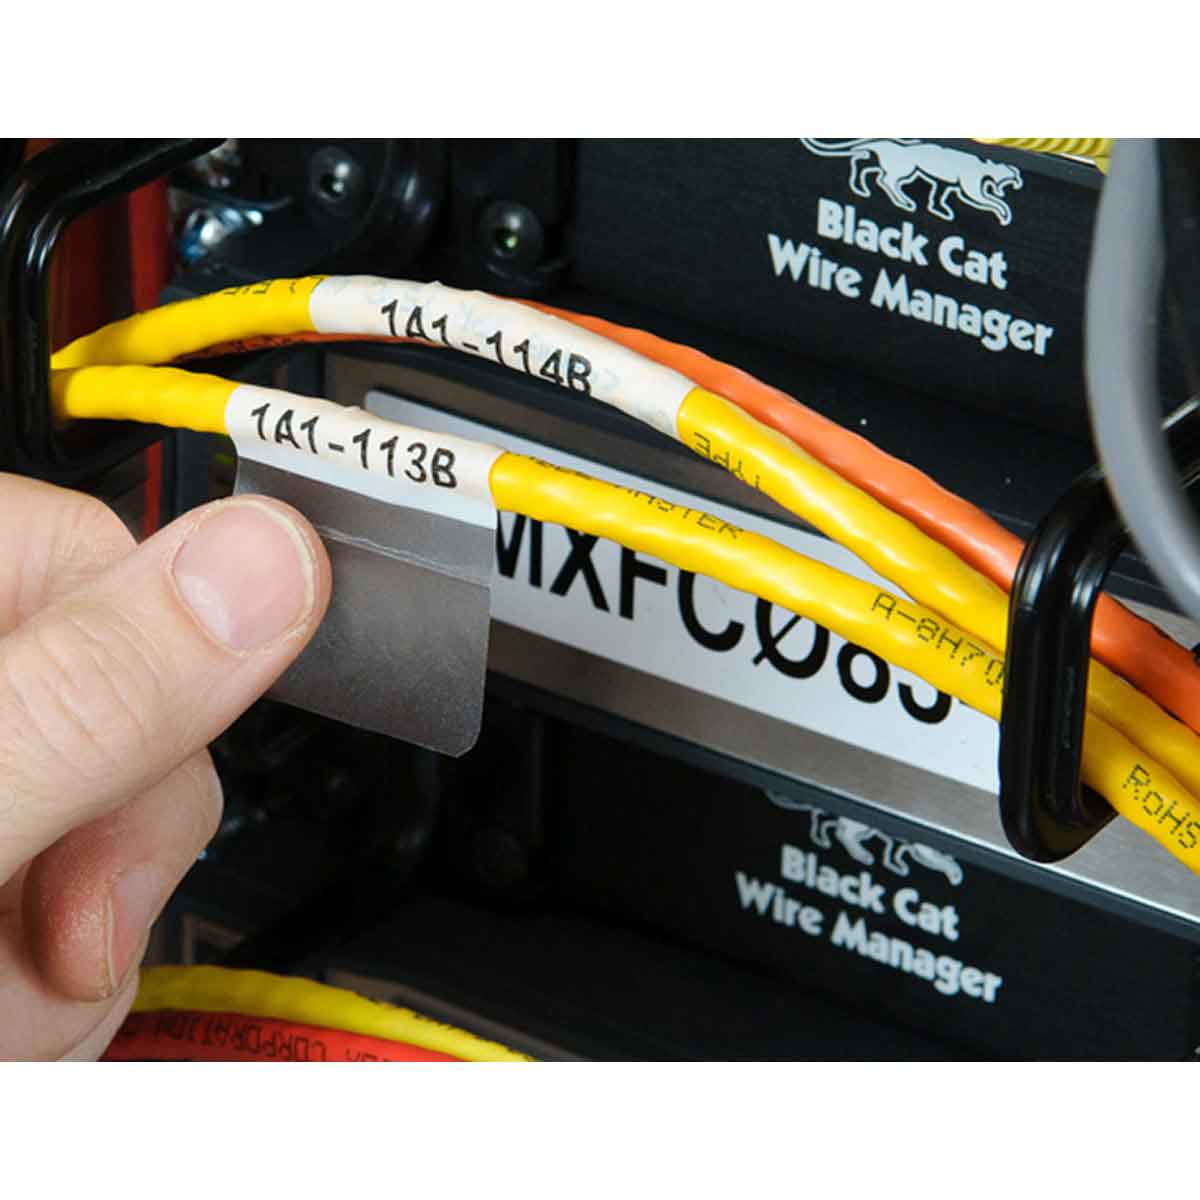 Etiquetas rotatorias para identificación de cables y latiguillos d – CMATIC